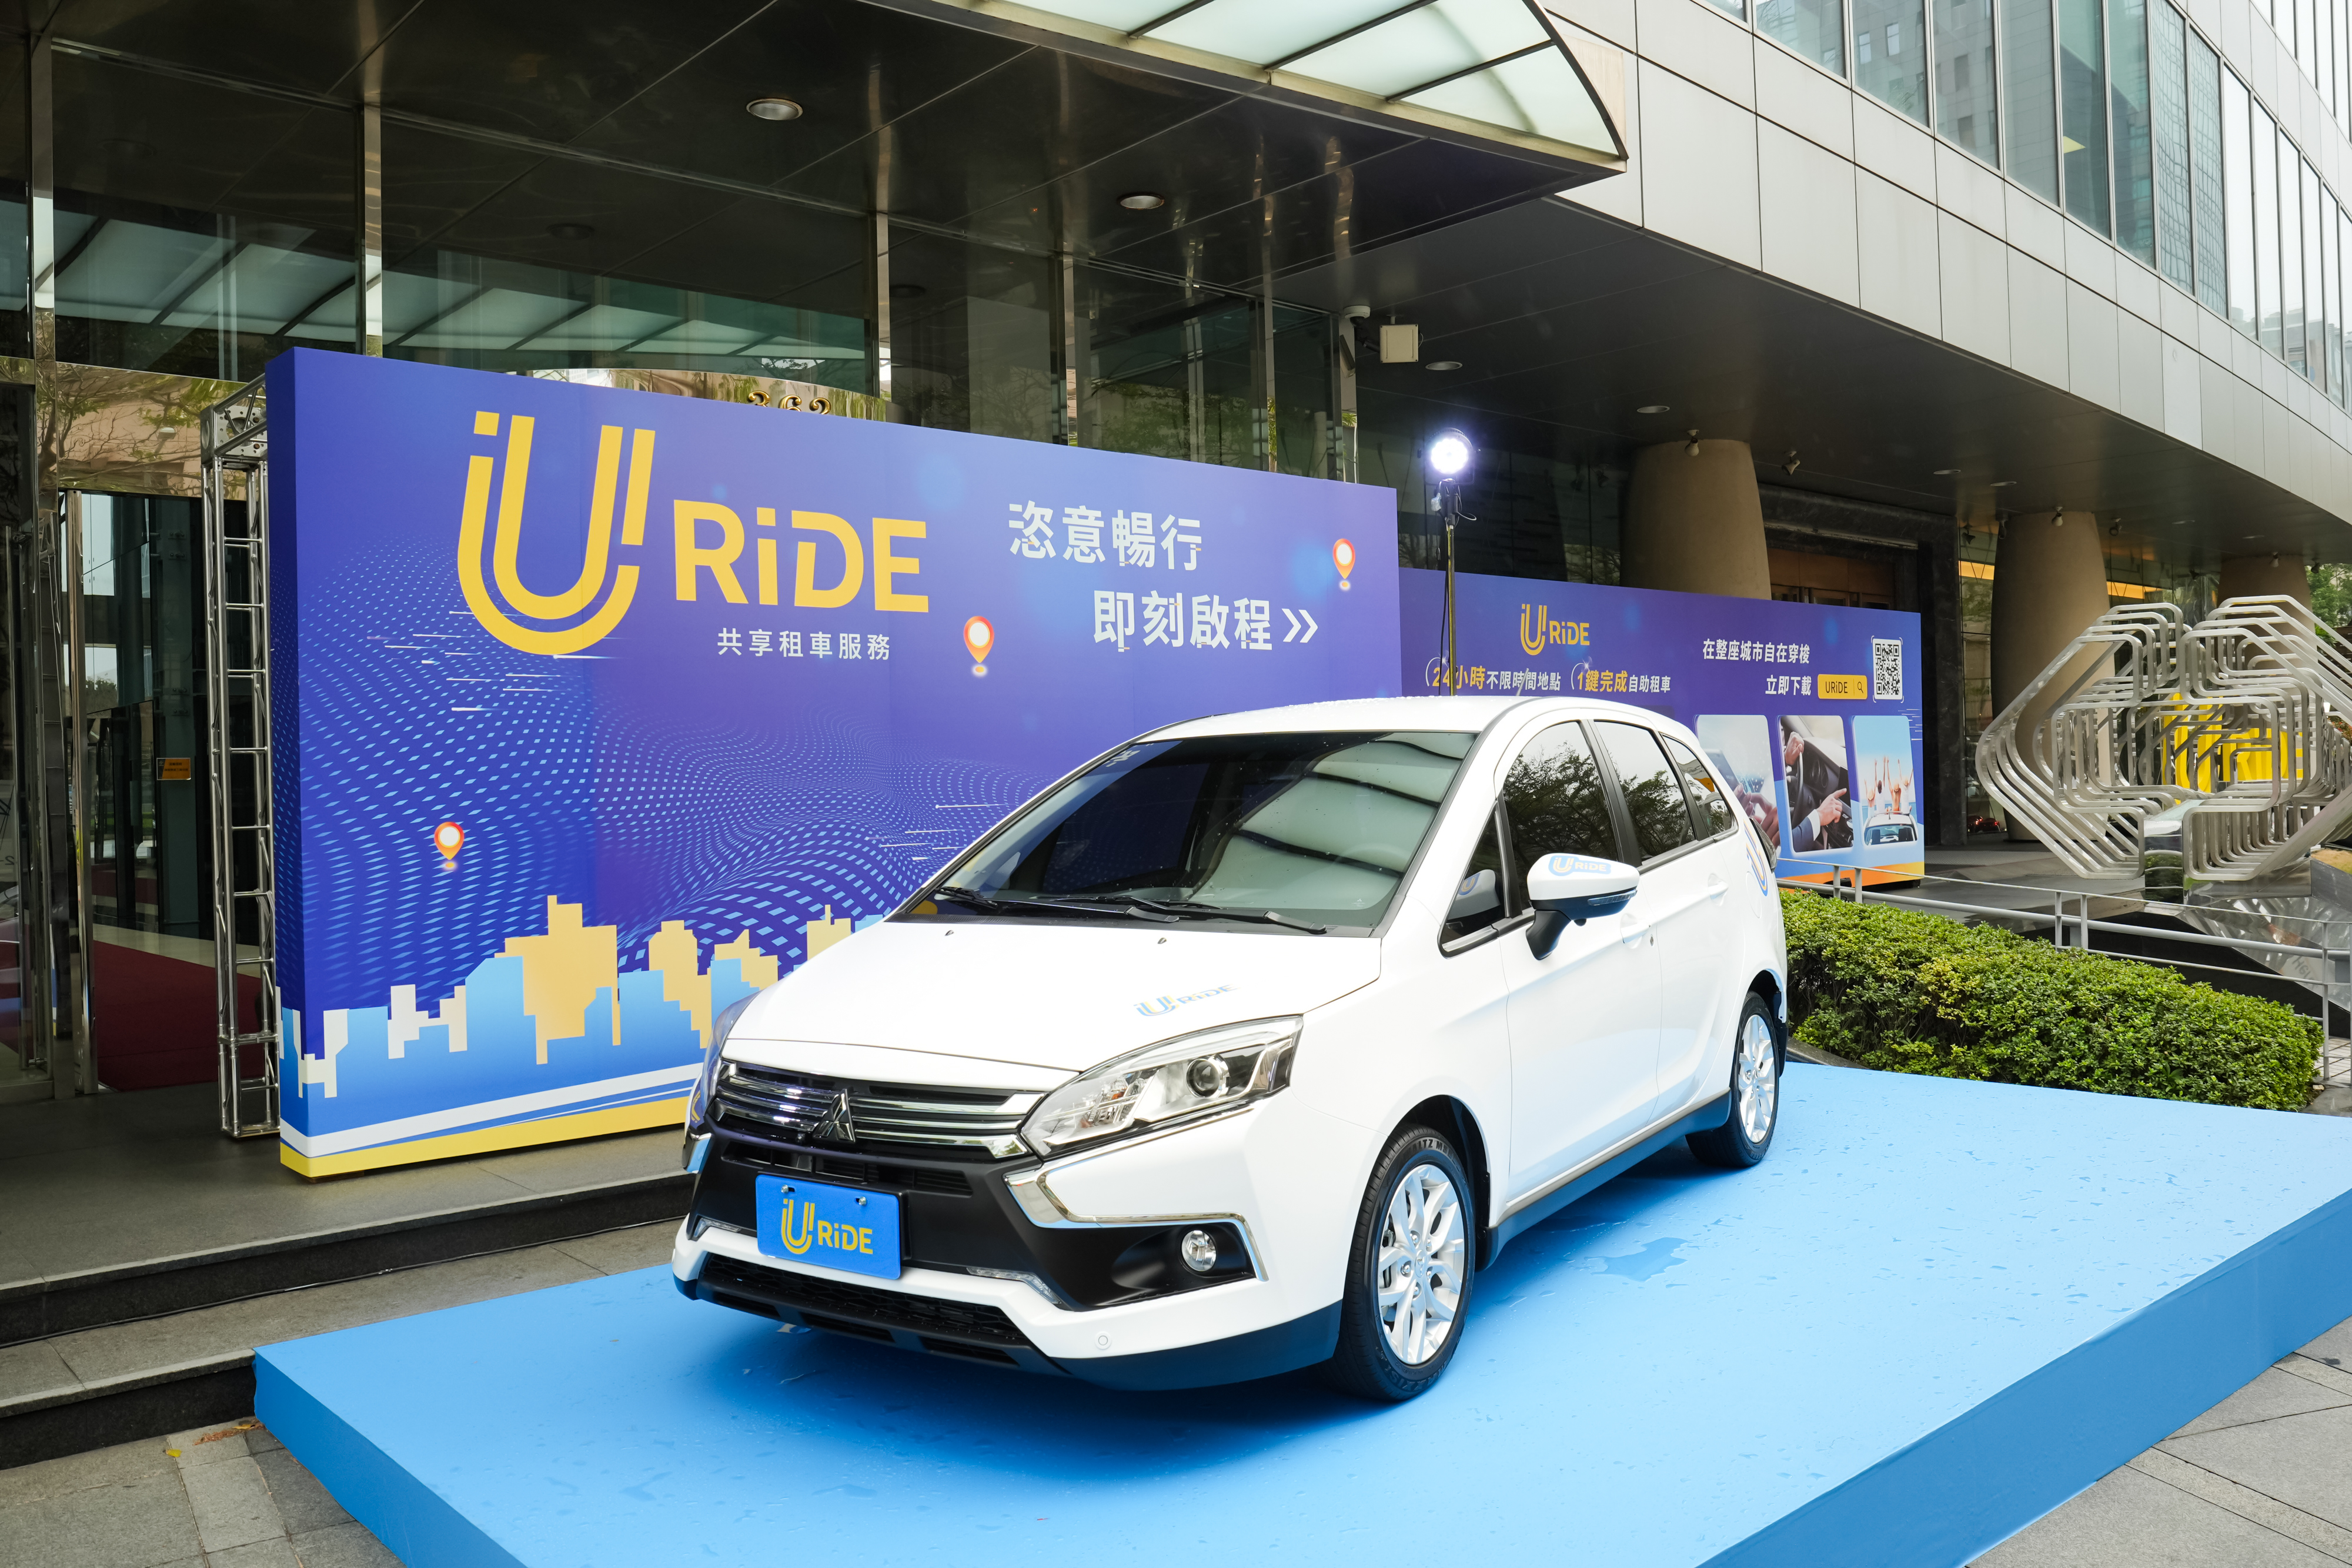 中 租 控 股 延 伸 短 期 租 車 「 中 租 租 車 」 品 牌 服 務 ， 新 推 出 「 U R i D E 」 共 享 租 車 品 牌 。   